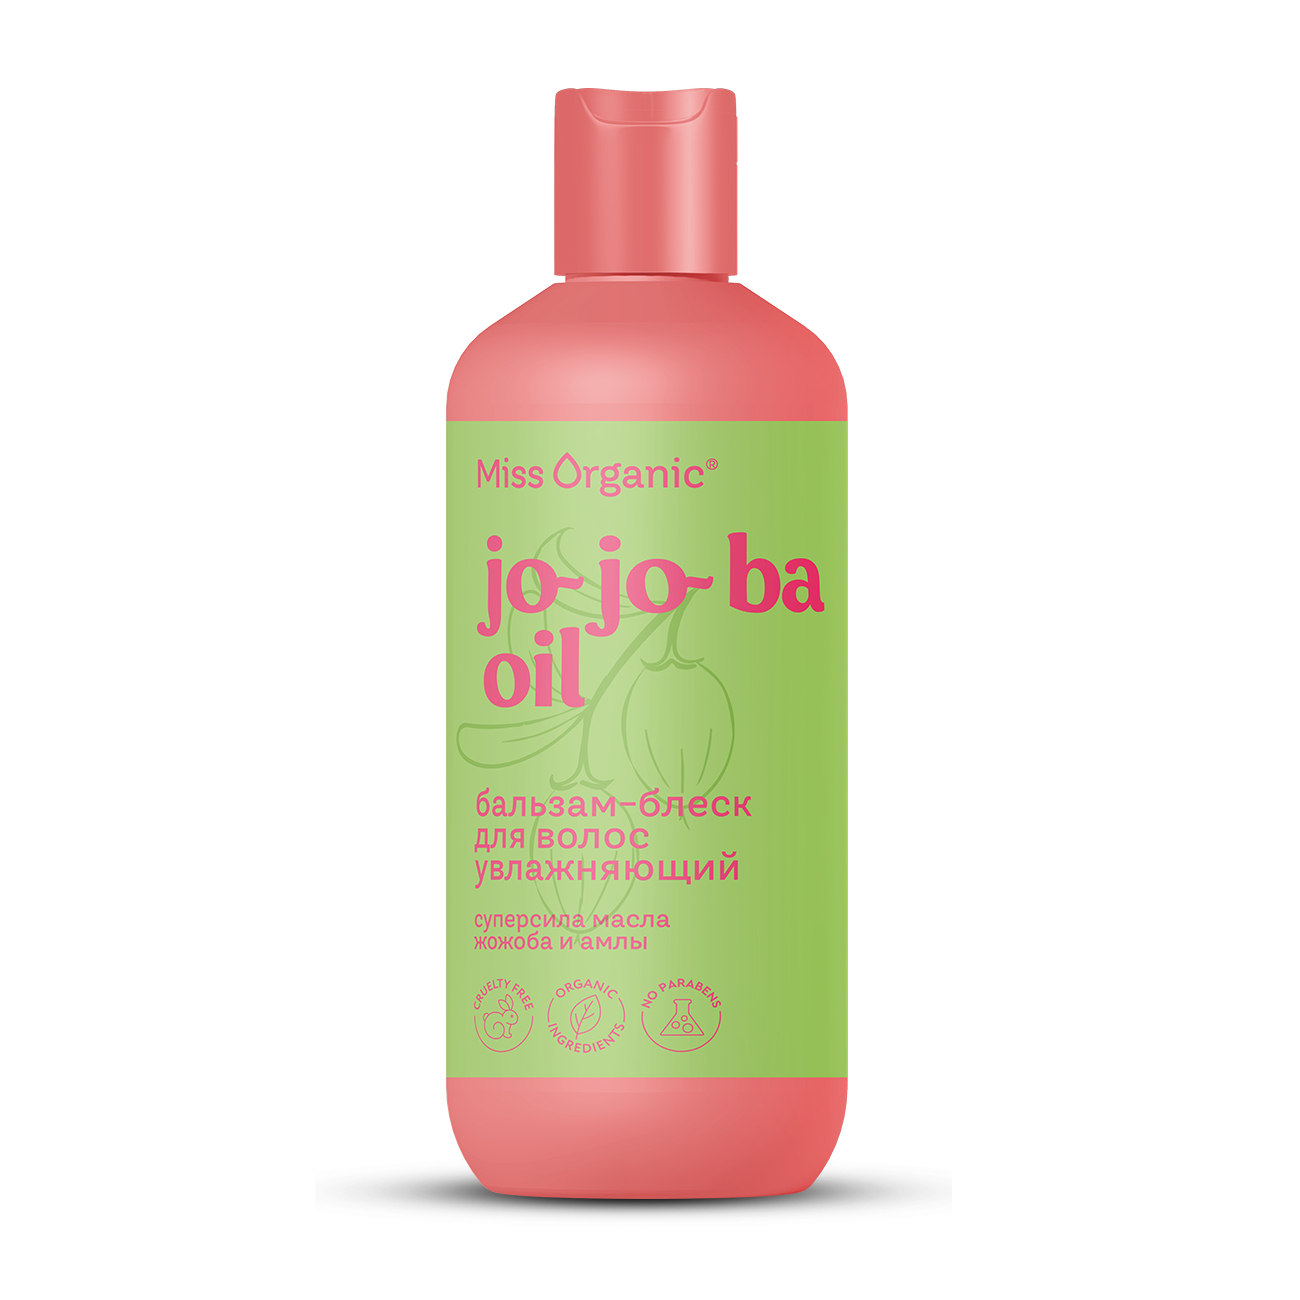 Бальзам для волос Miss Organic Jo-jo-ba Oil увлажняющий, 290 мл miss laminaria бальзам для губ классический 5